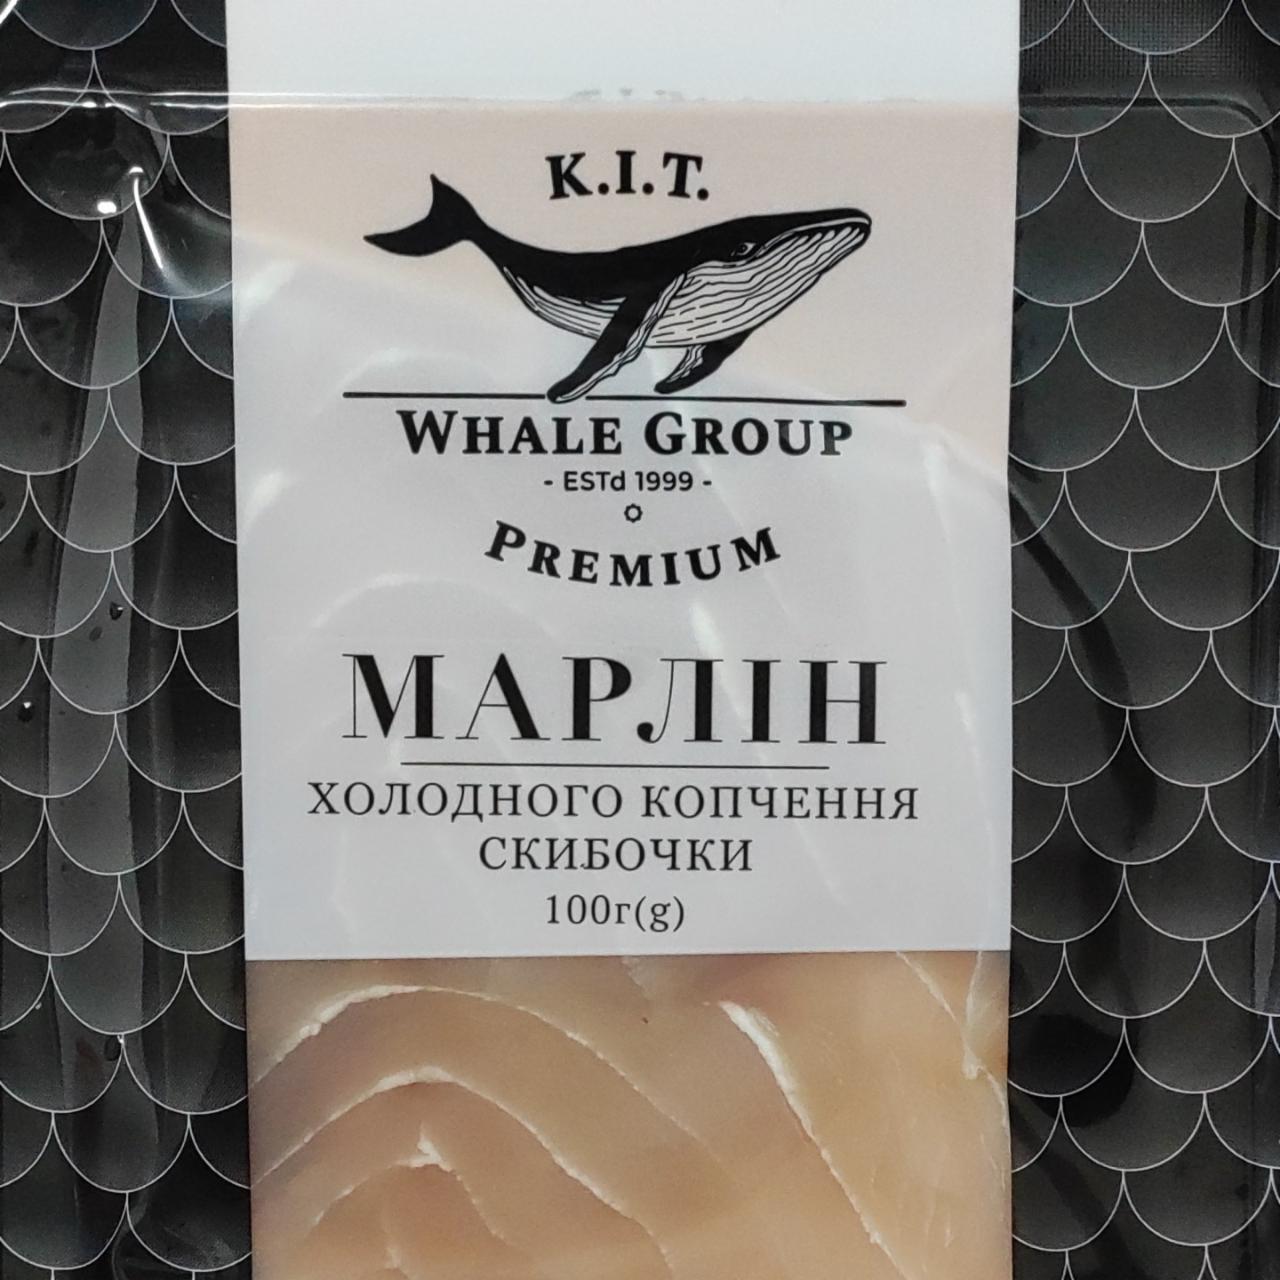 Фото - Марлин холодного копчения K.I.T Whale Group